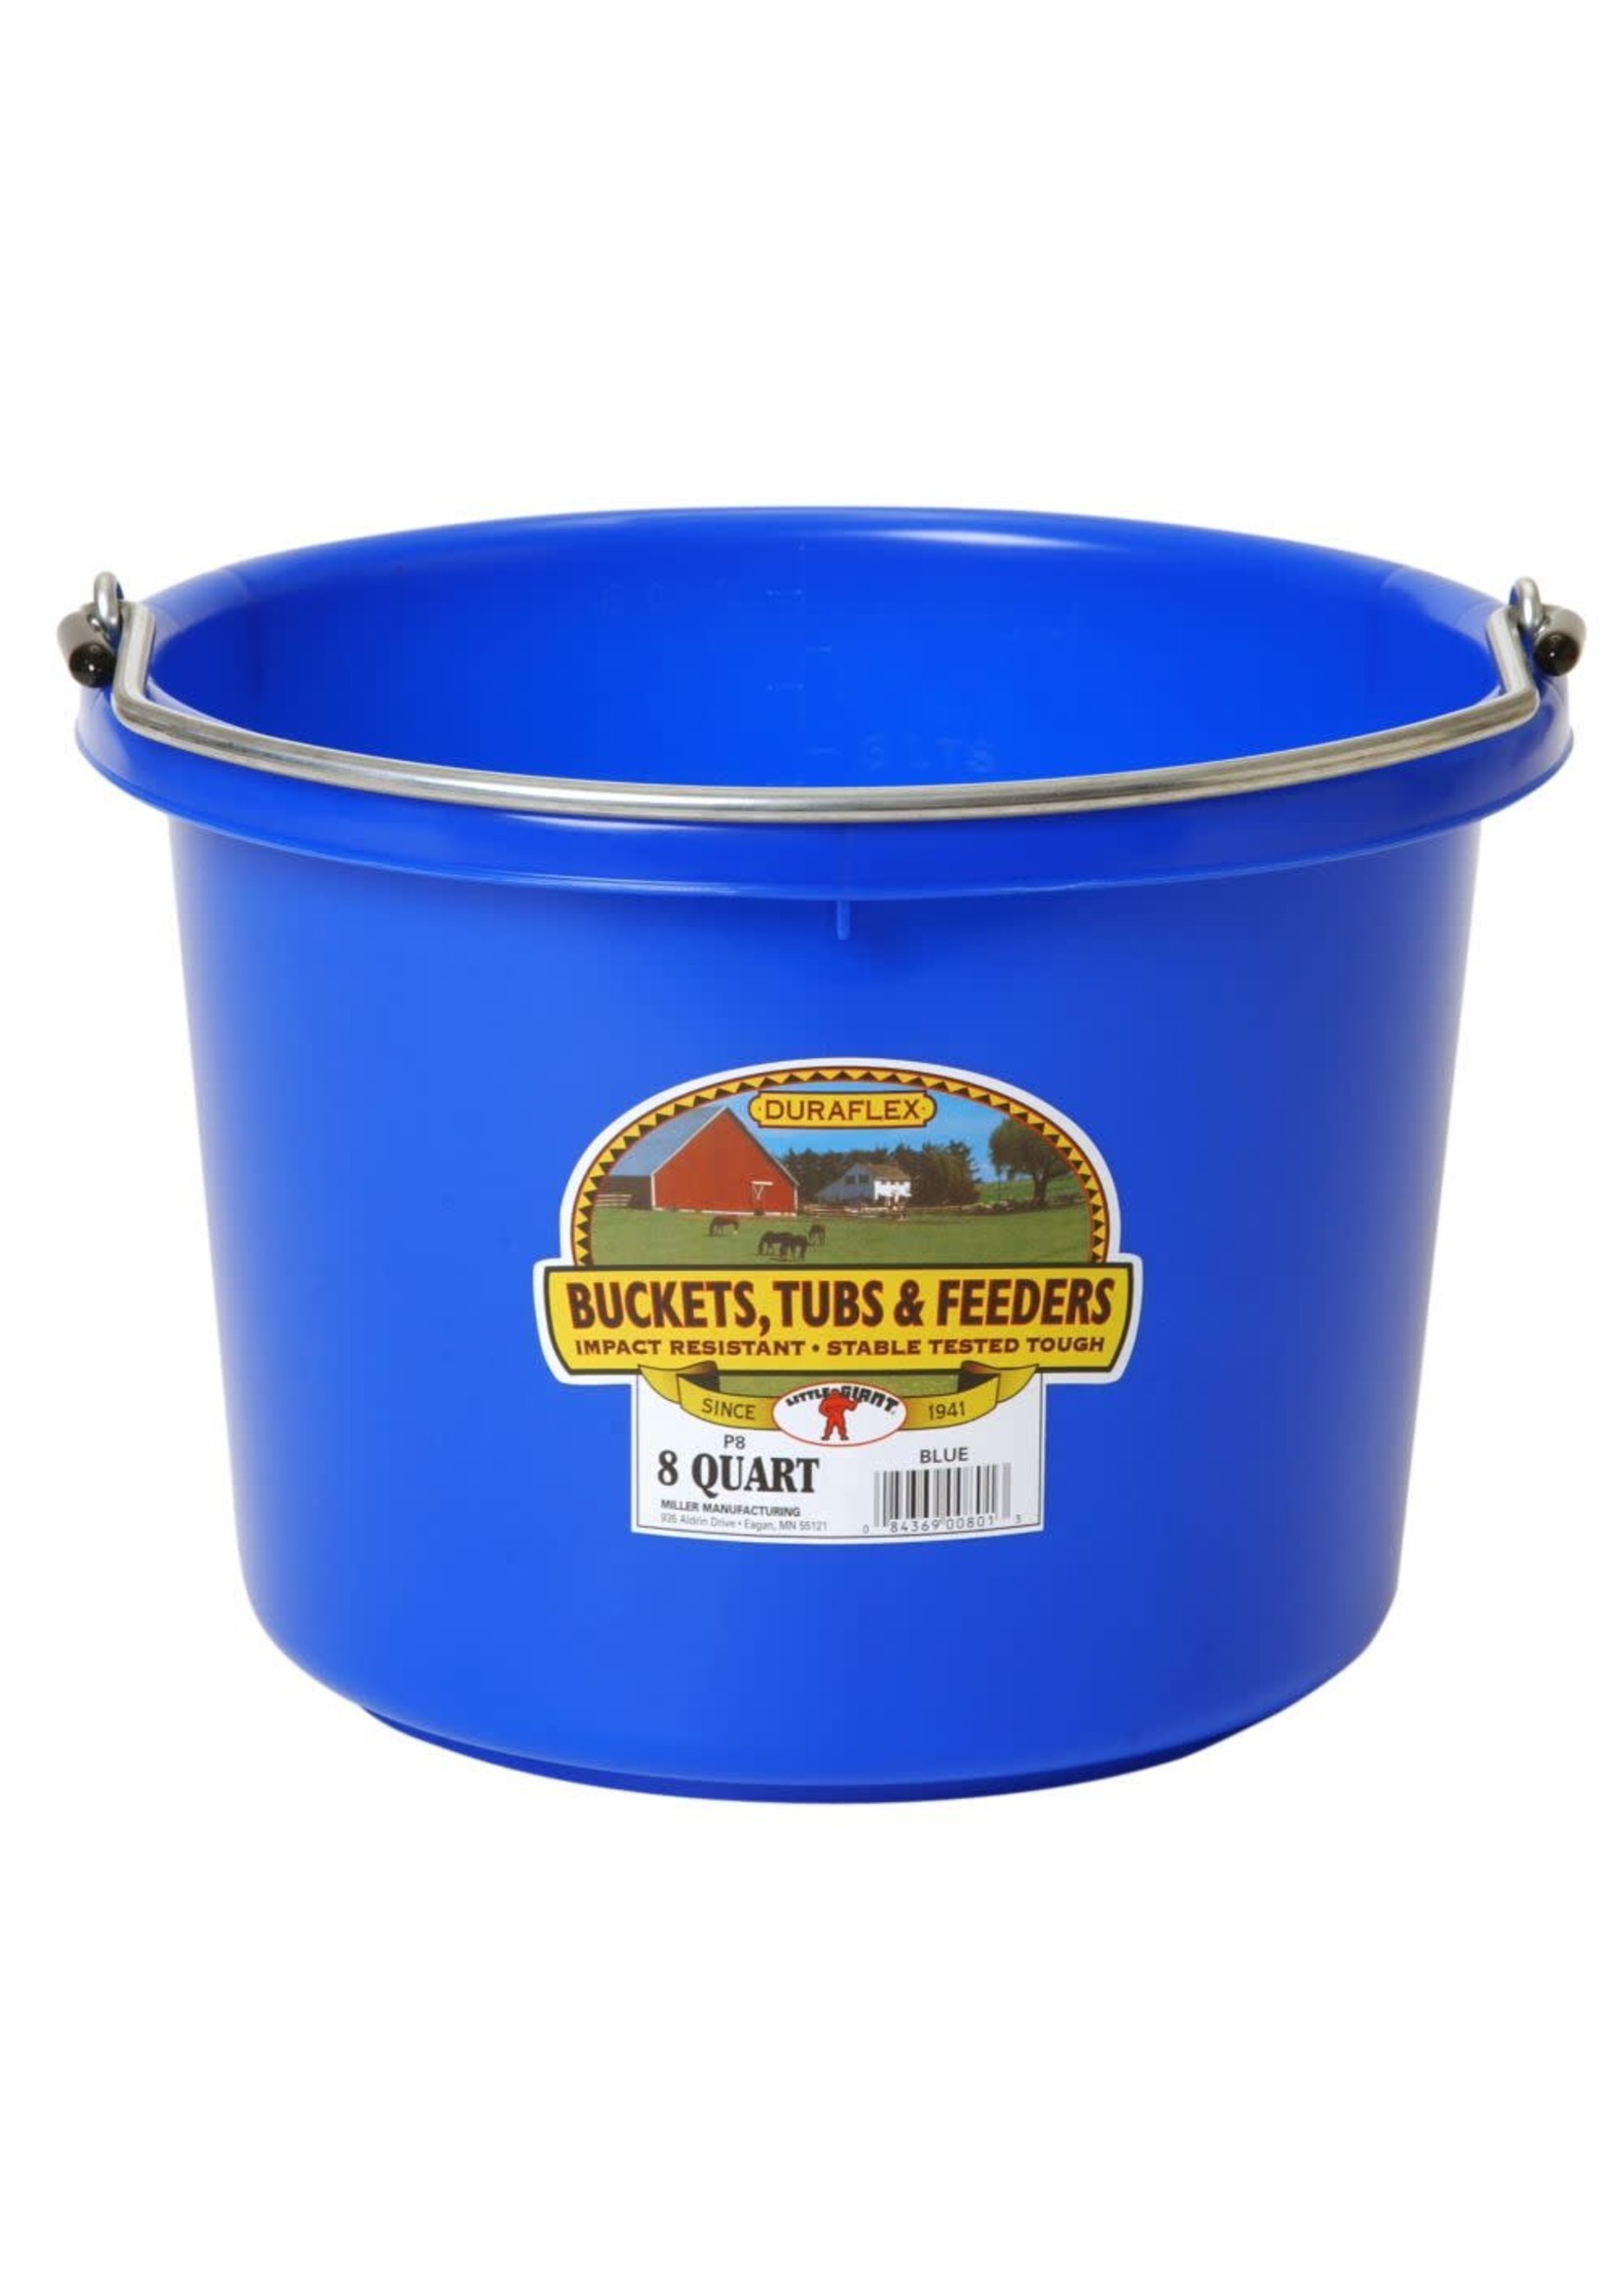 Utility Bucket-Plastic Bucket